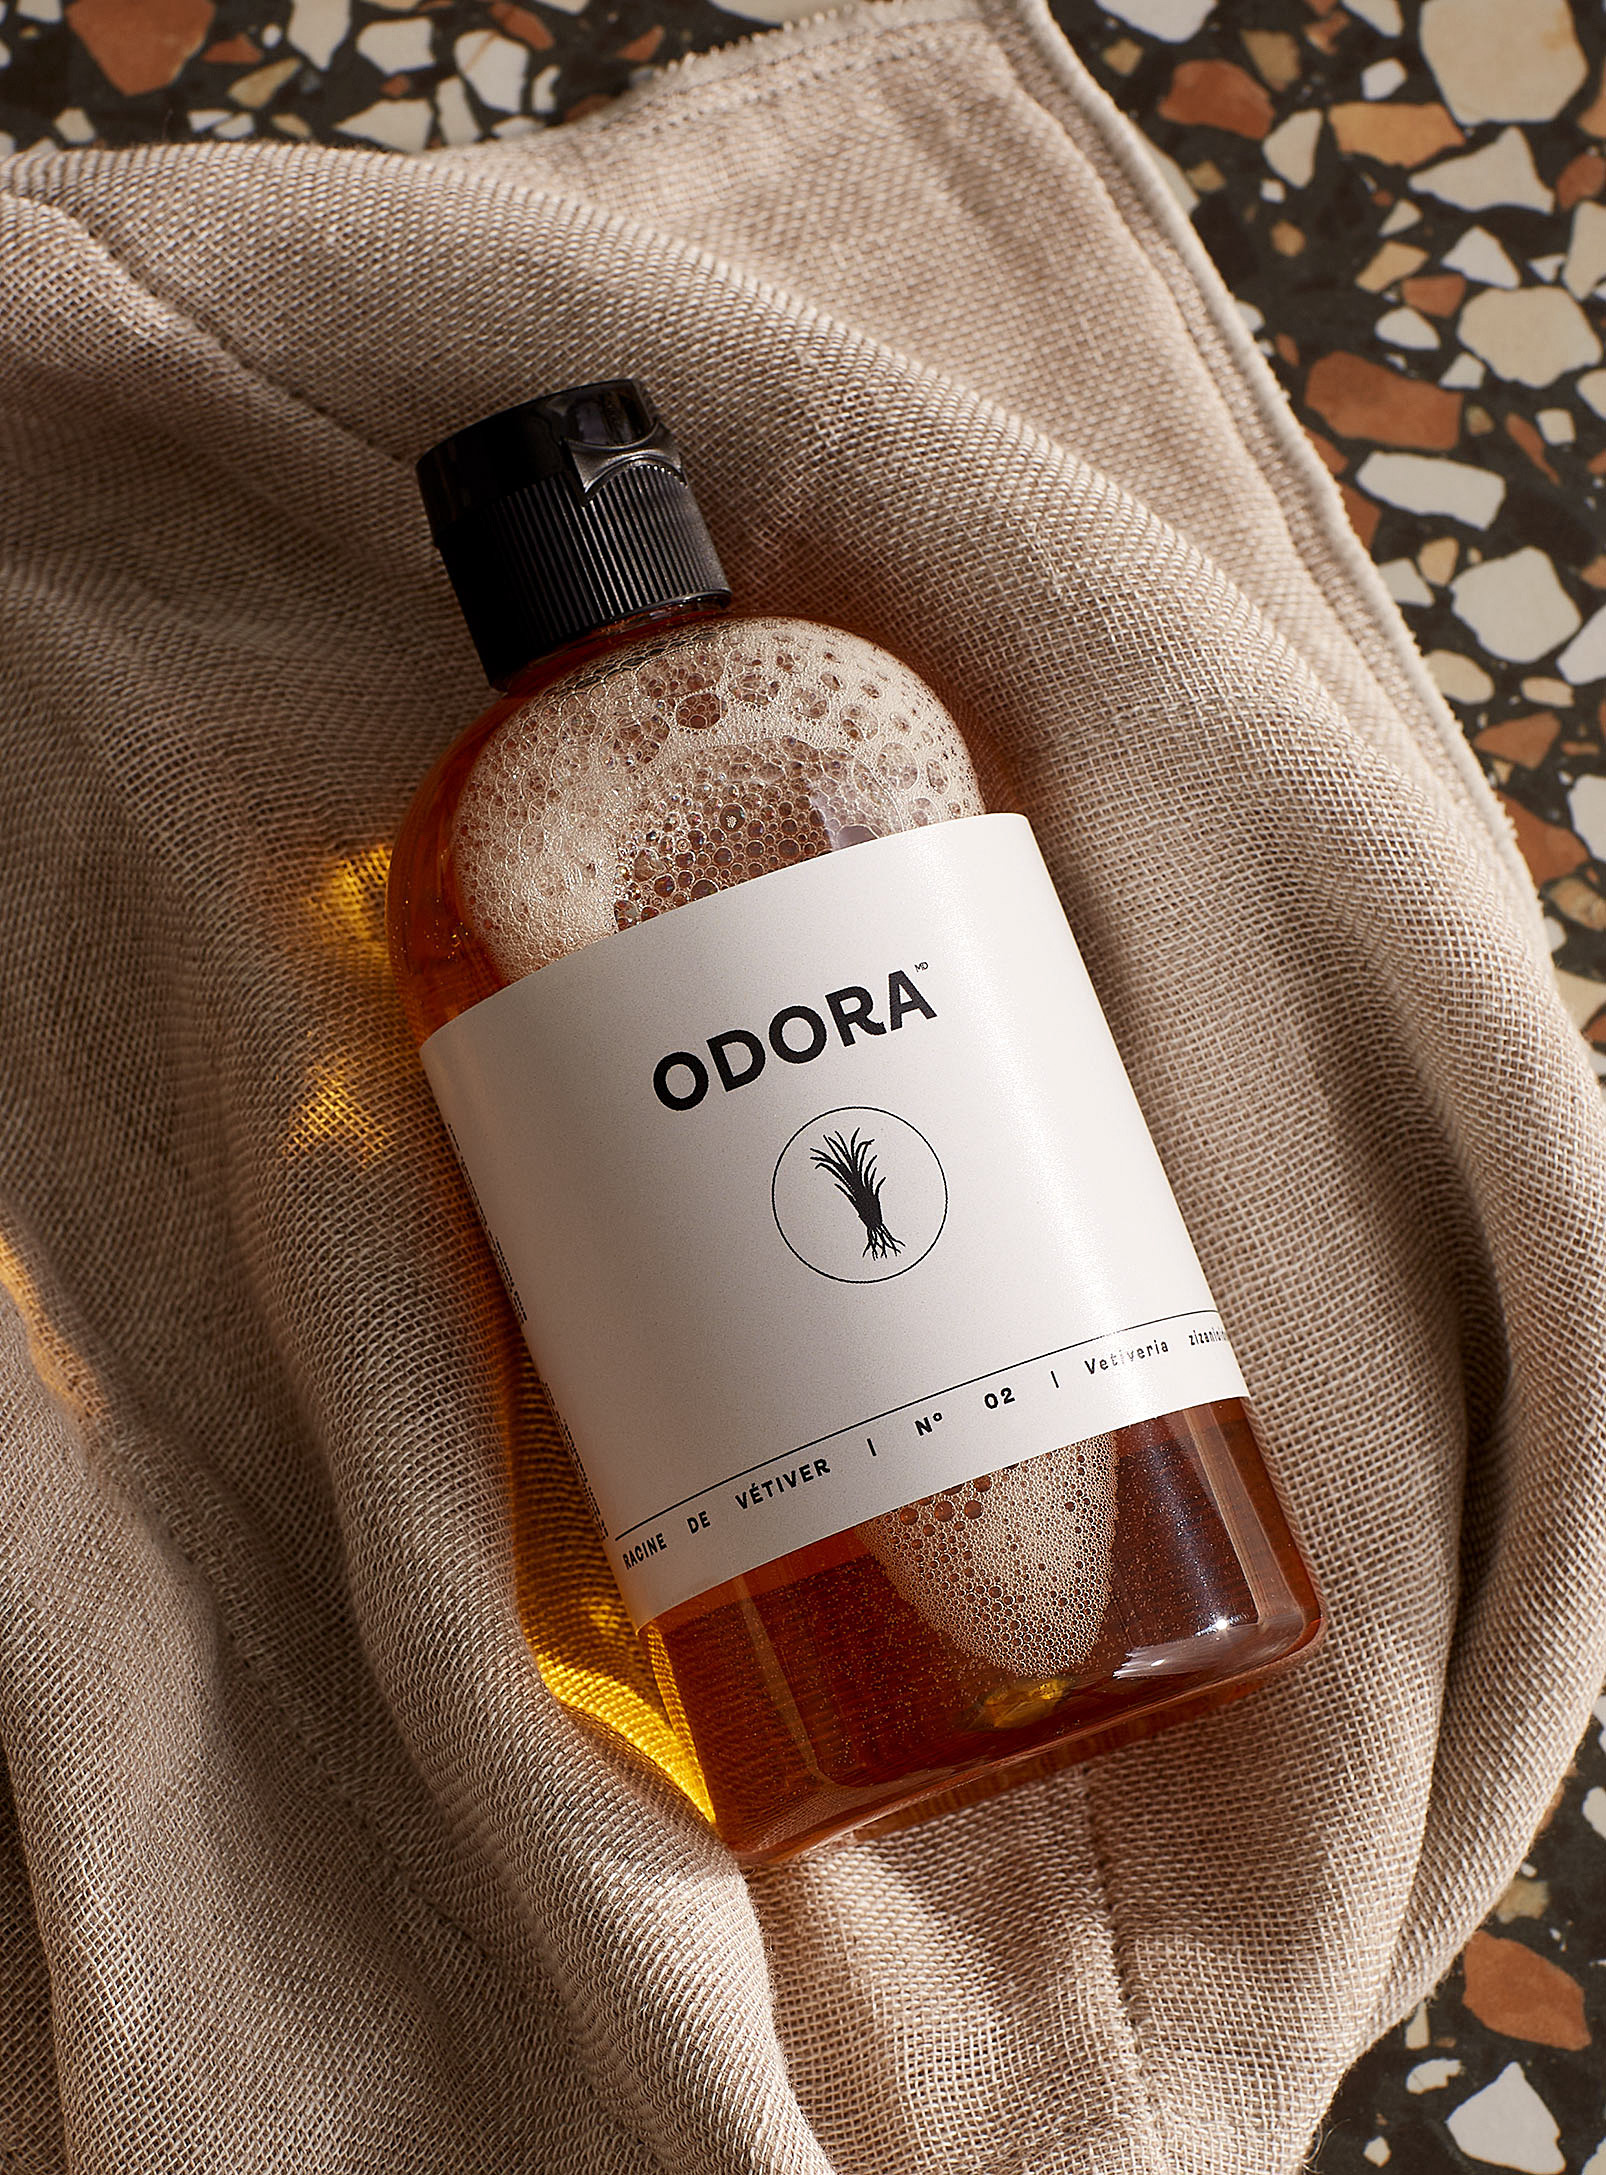 Odora - Balade en forêt home fragrance